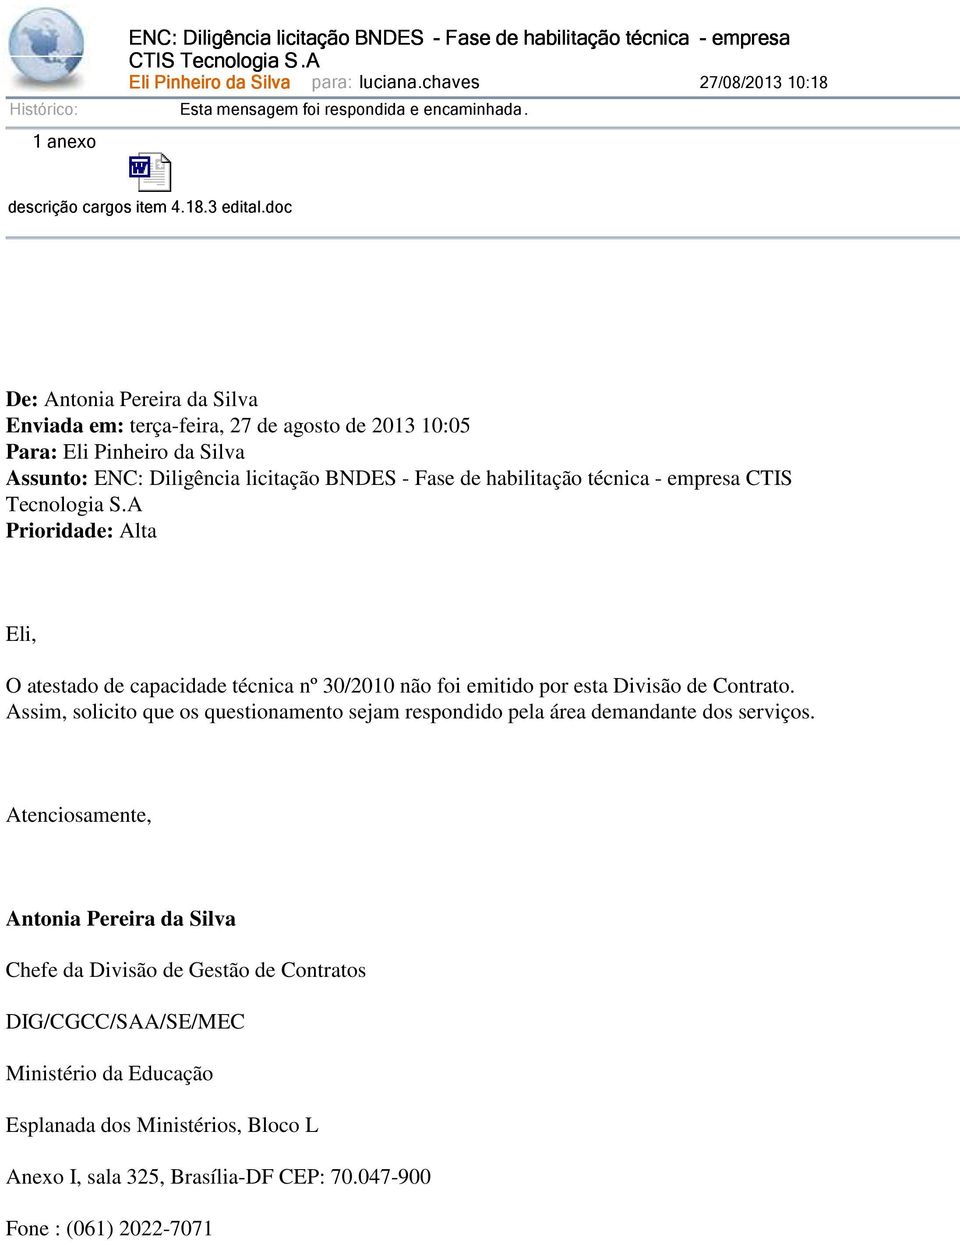 doc De: Antonia Pereira da Silva Enviada em: terça-feira, 27 de agosto de 2013 10:05 Para: Eli Pinheiro da Silva Assunto: ENC: Diligência licitação BNDES - Fase de habilitação técnica - empresa CTIS